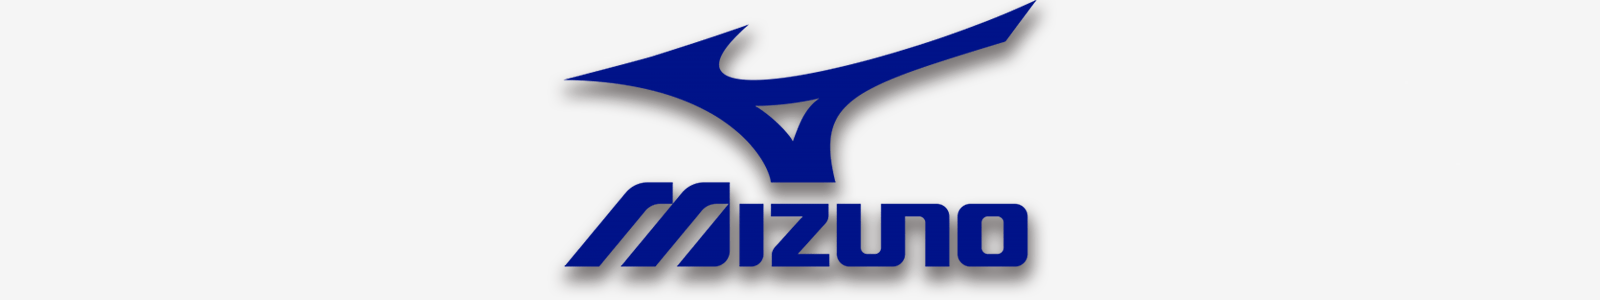 Mizuno Logo - The New Mizuno JPX 919 Irons Review | GolfBox - GolfBox